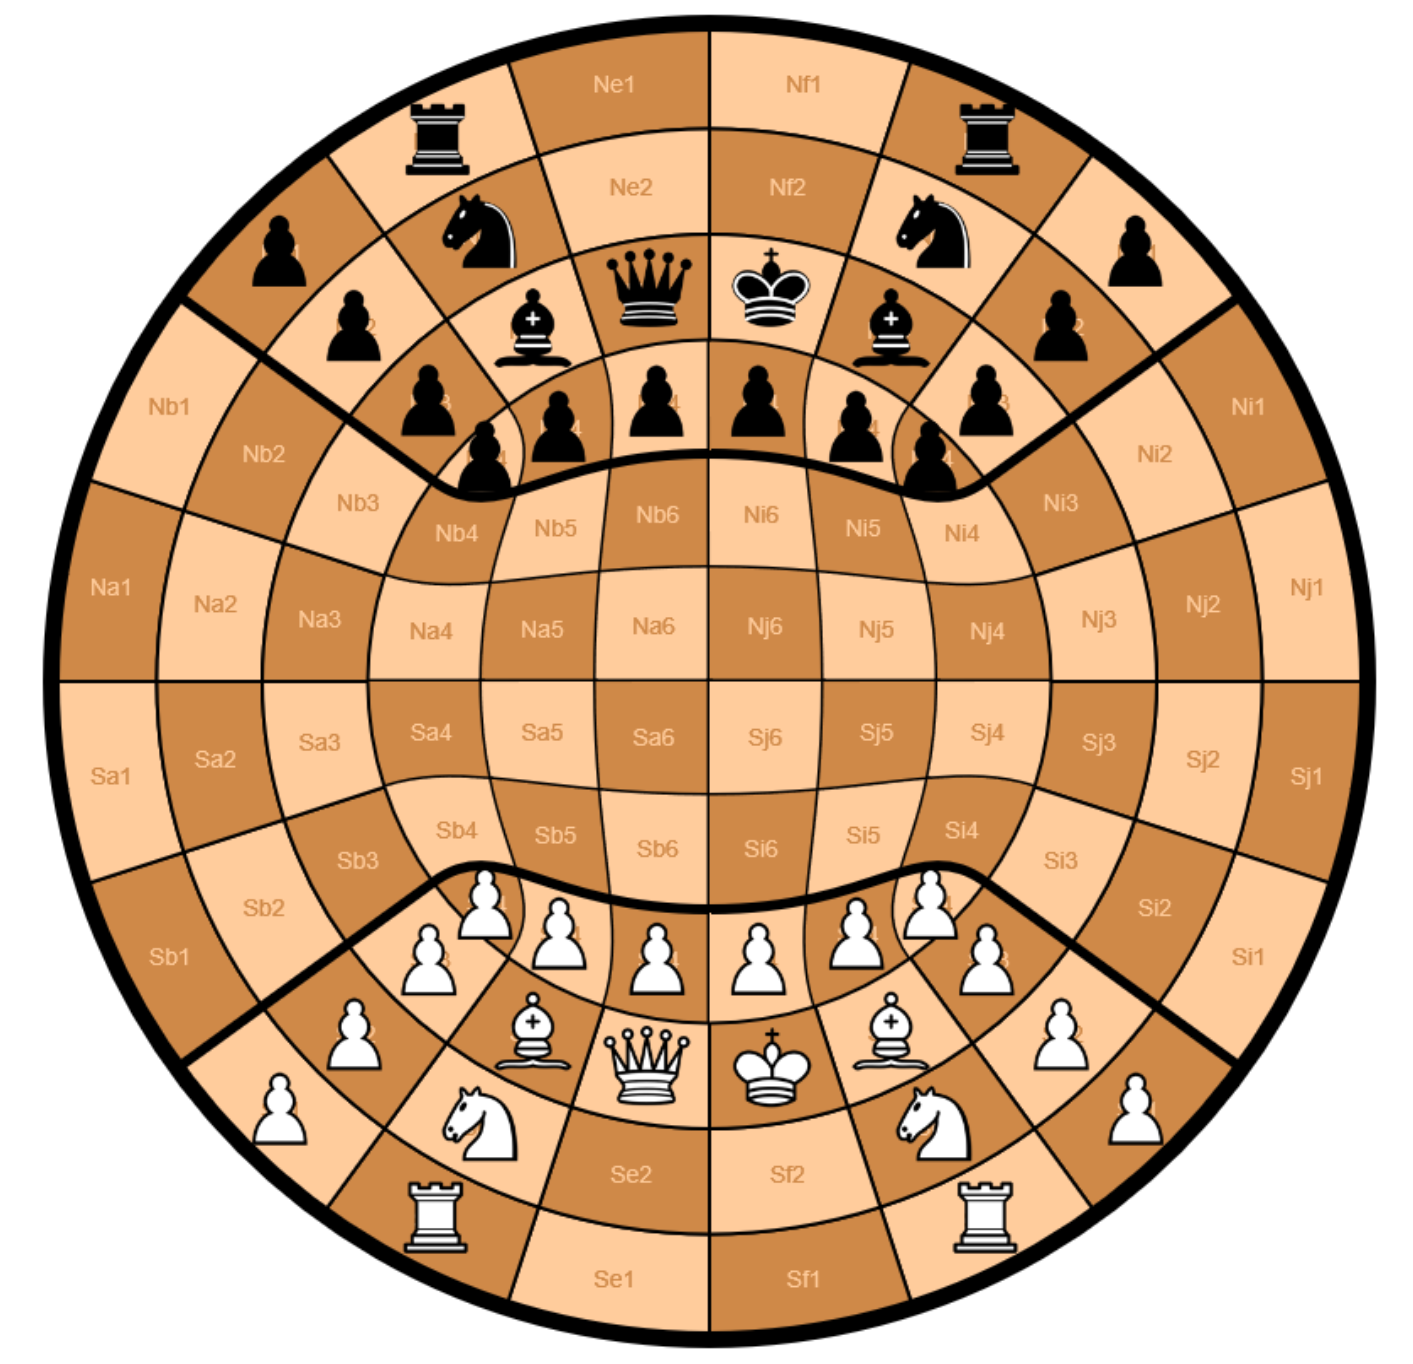 Musketeer Chess Variant Kit -  (Dragon) & Spider - Black